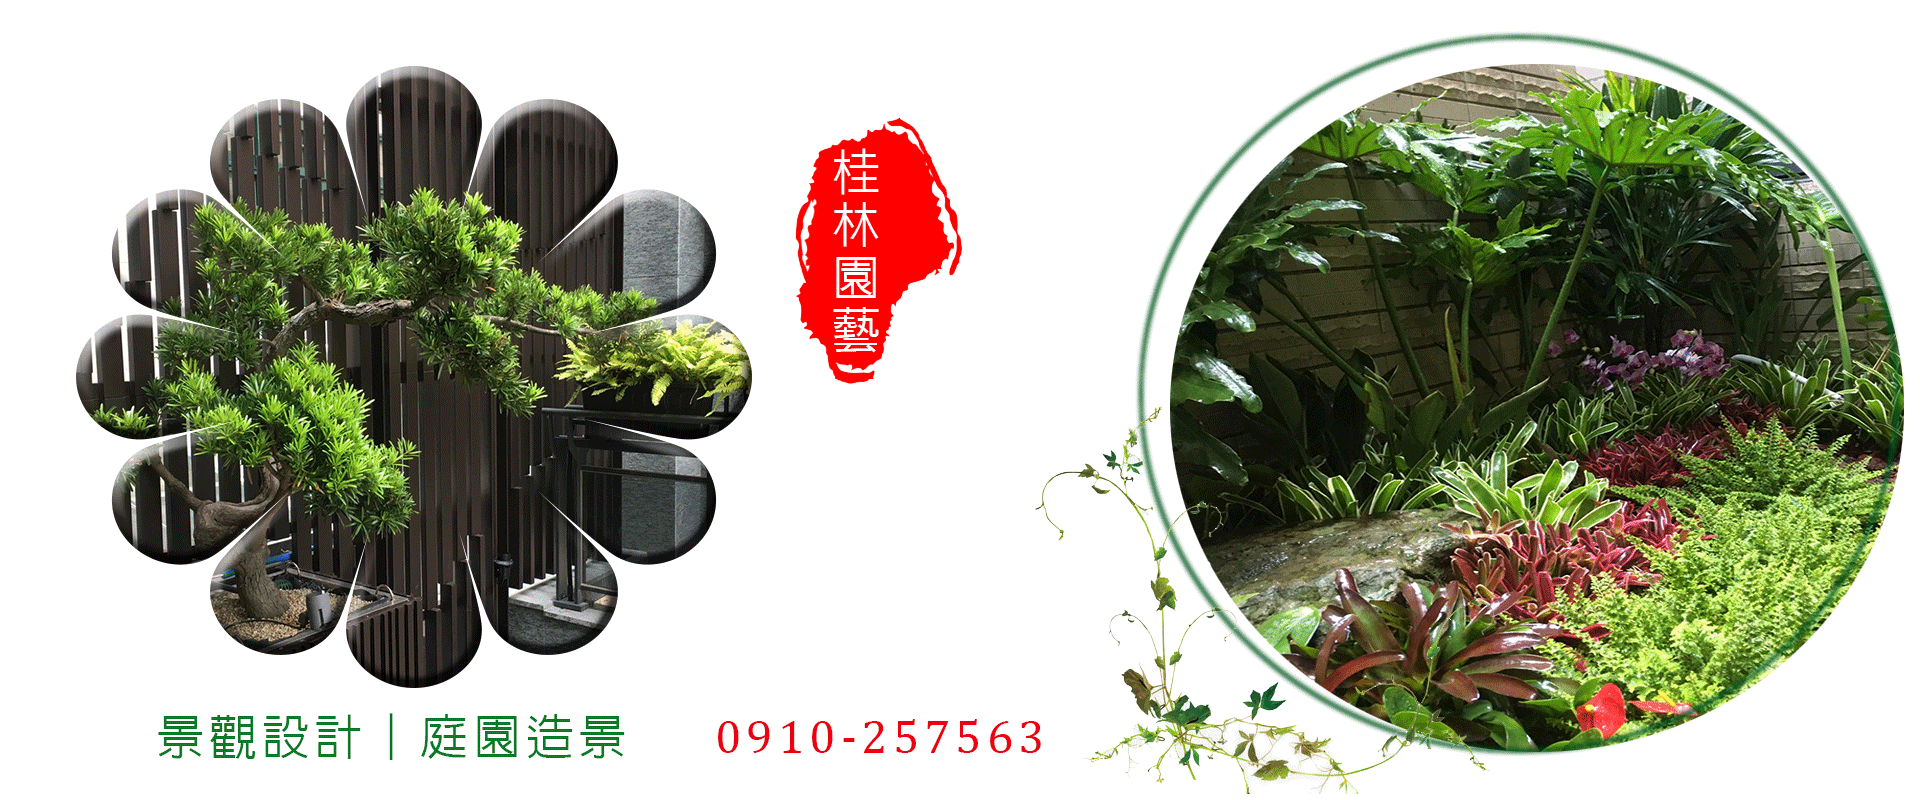 新竹景觀設計,新竹綠化工程,造園,景觀設計,園藝設計-桂林園藝